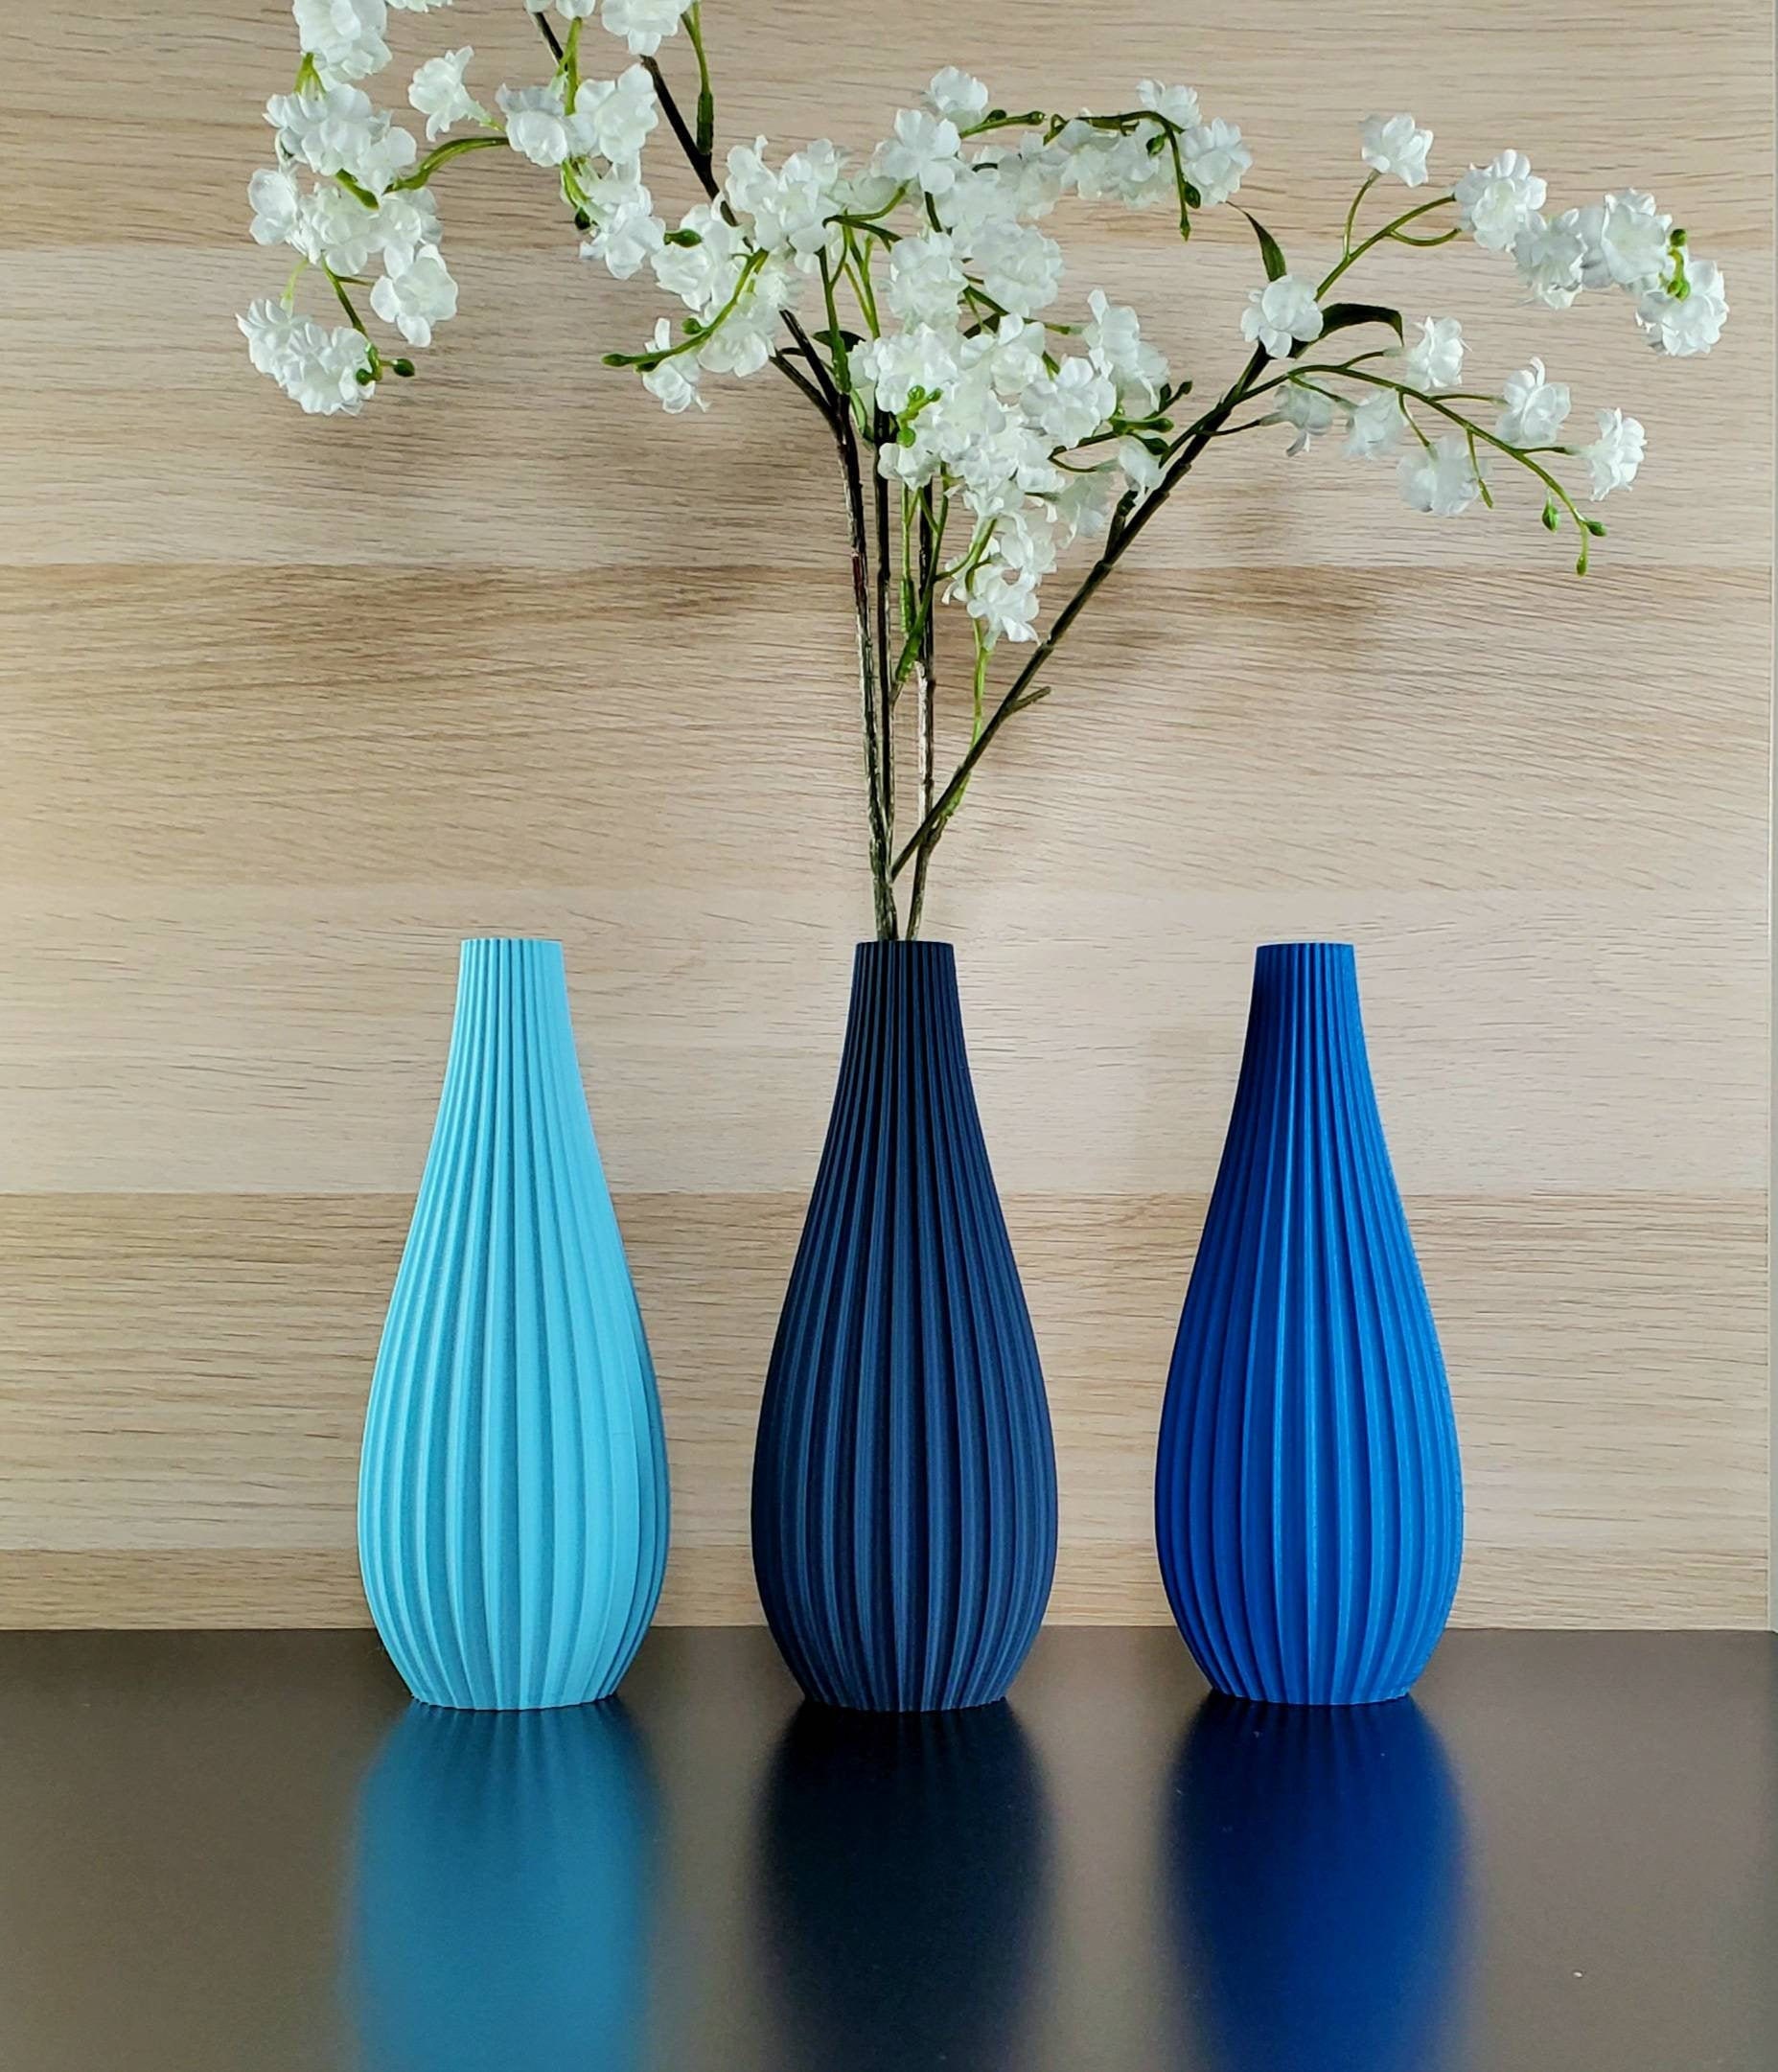  LSA G1282-31-610 Olivia Flower Base, Flower Vase, Light Blue,  Height 12.2 inches (31 cm) : Home & Kitchen